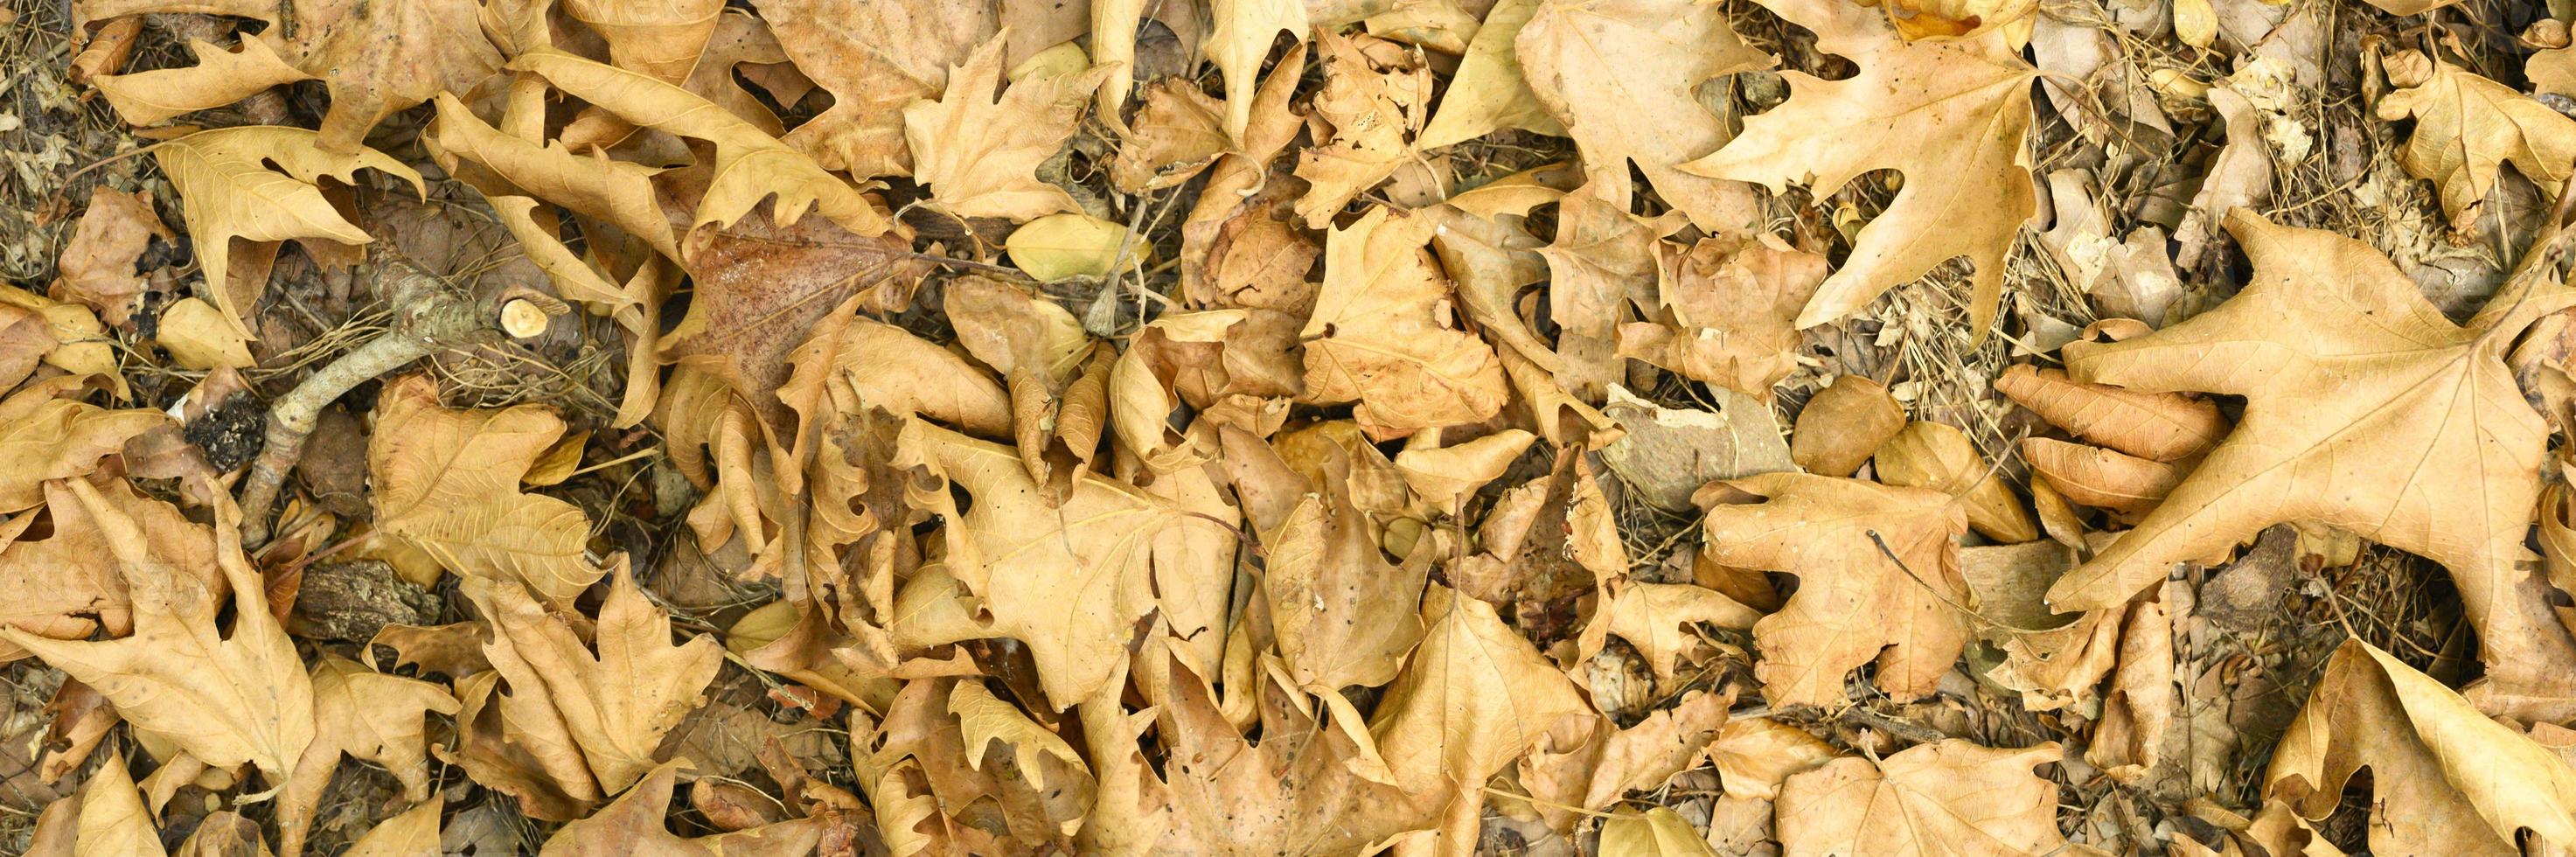 gestructureerde achtergrond van droge verdorde gevallen herfstbladeren van esdoorns foto